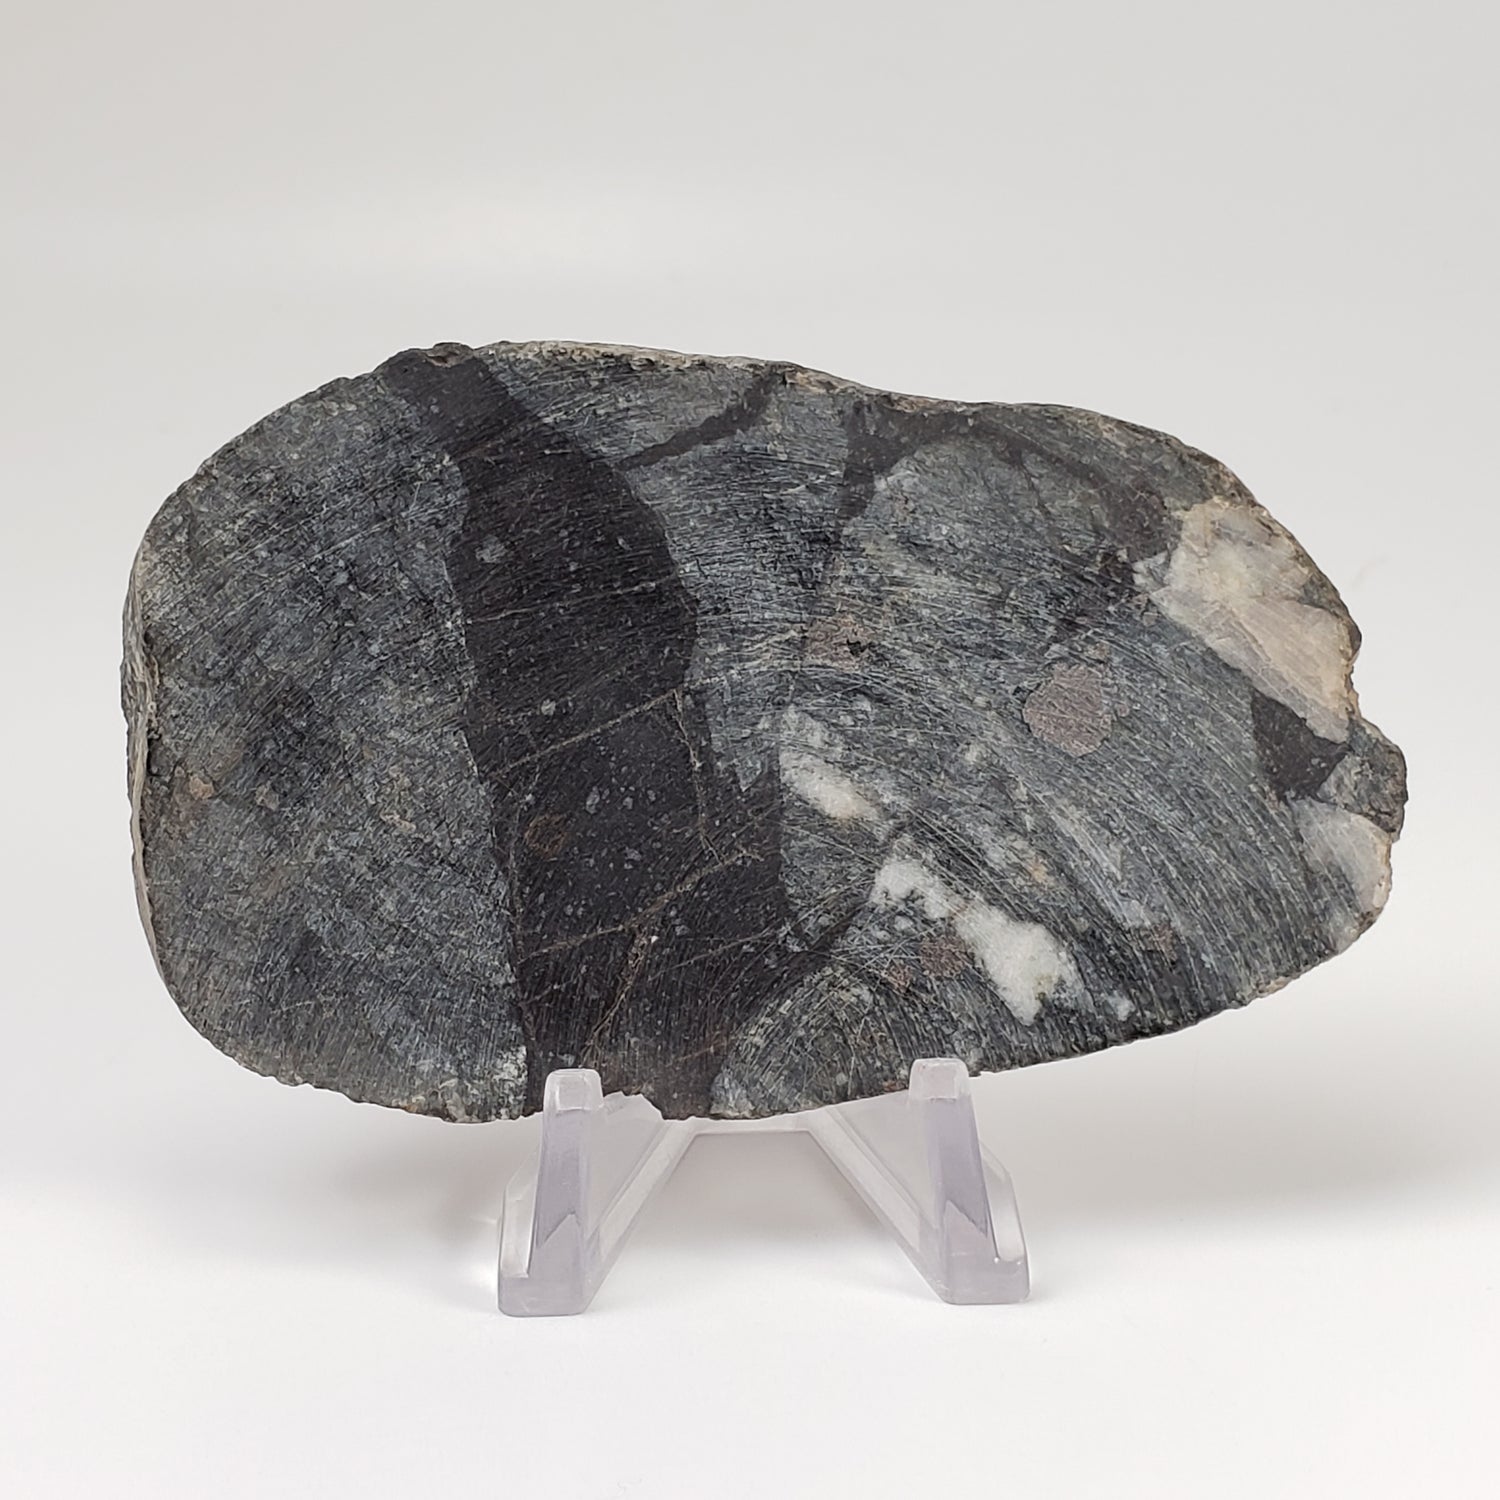 Dellenites Impact Melt Rock | 90.4 grams | HT Tagamite | Dellen Crater, Sweden | Canagem.com